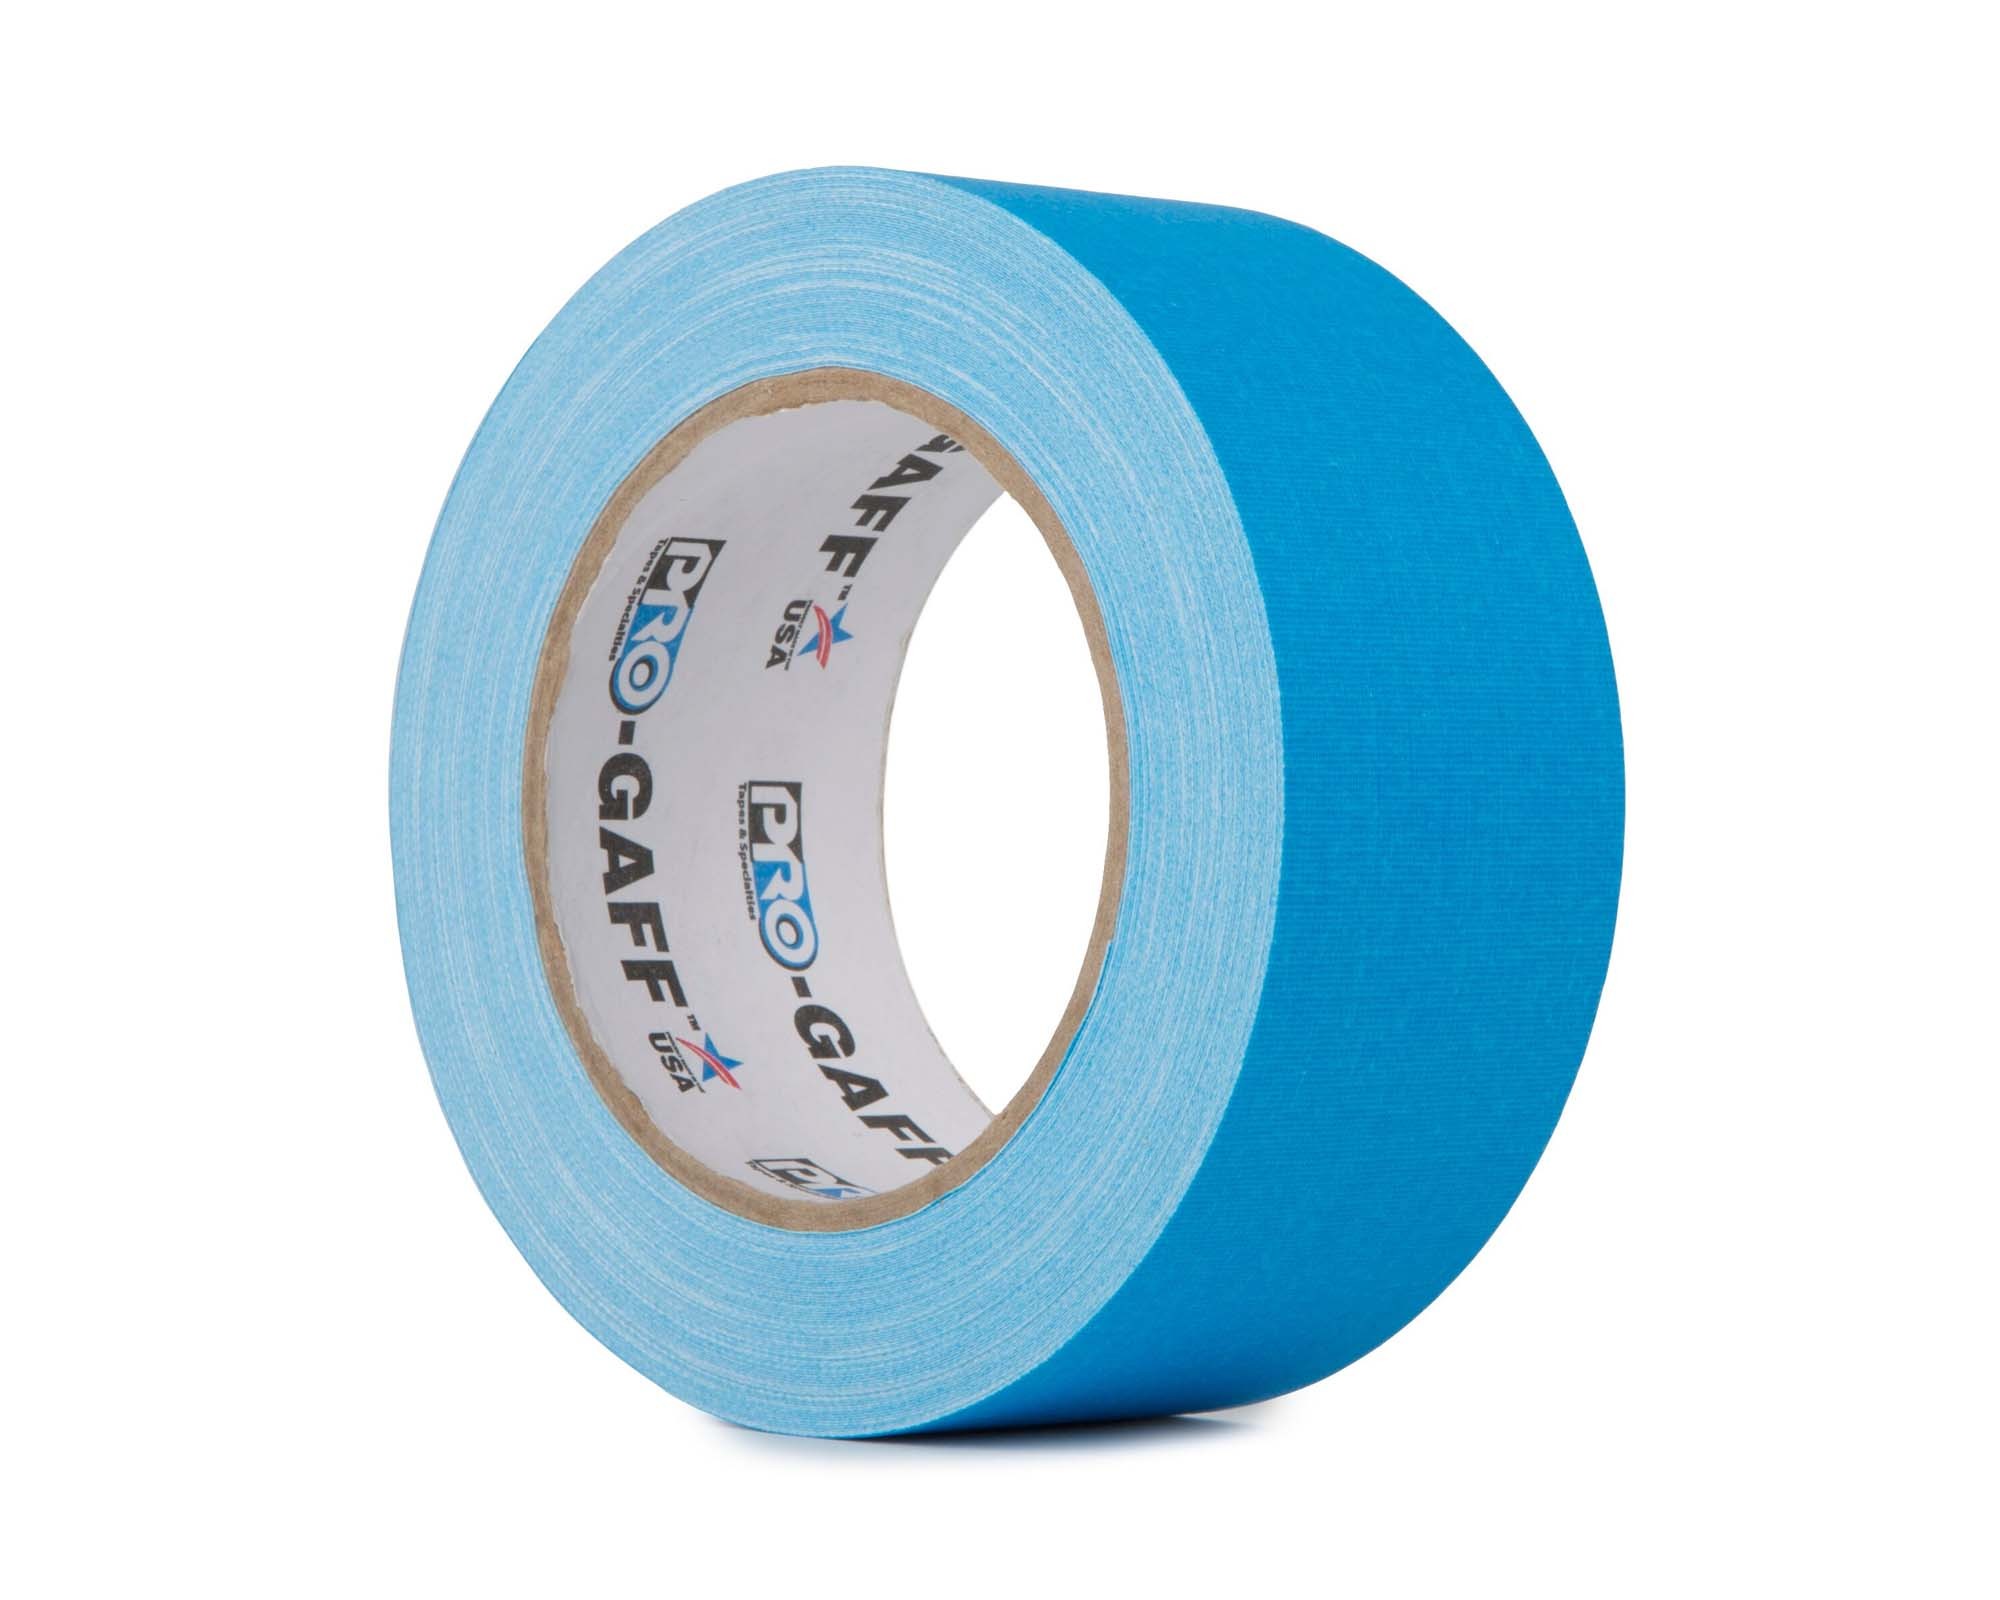 Pro Gaff FLUORESCENT Gaffer Tape 48mm x 25yds BLUE, Le Mark